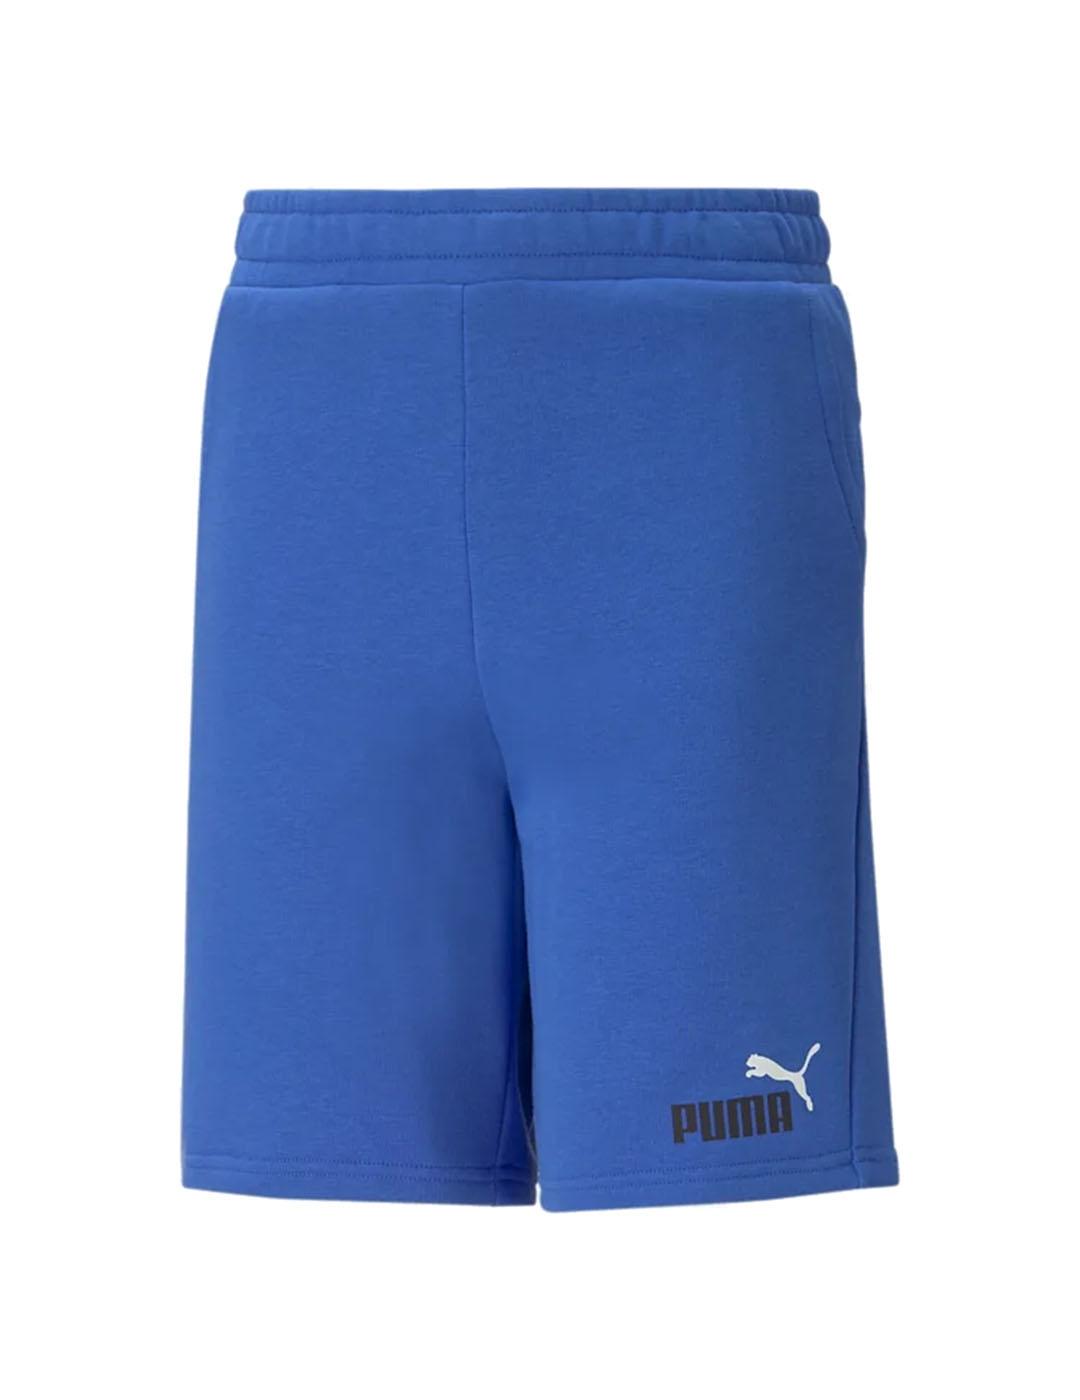 Short Niño Puma Ess  Azul Royal